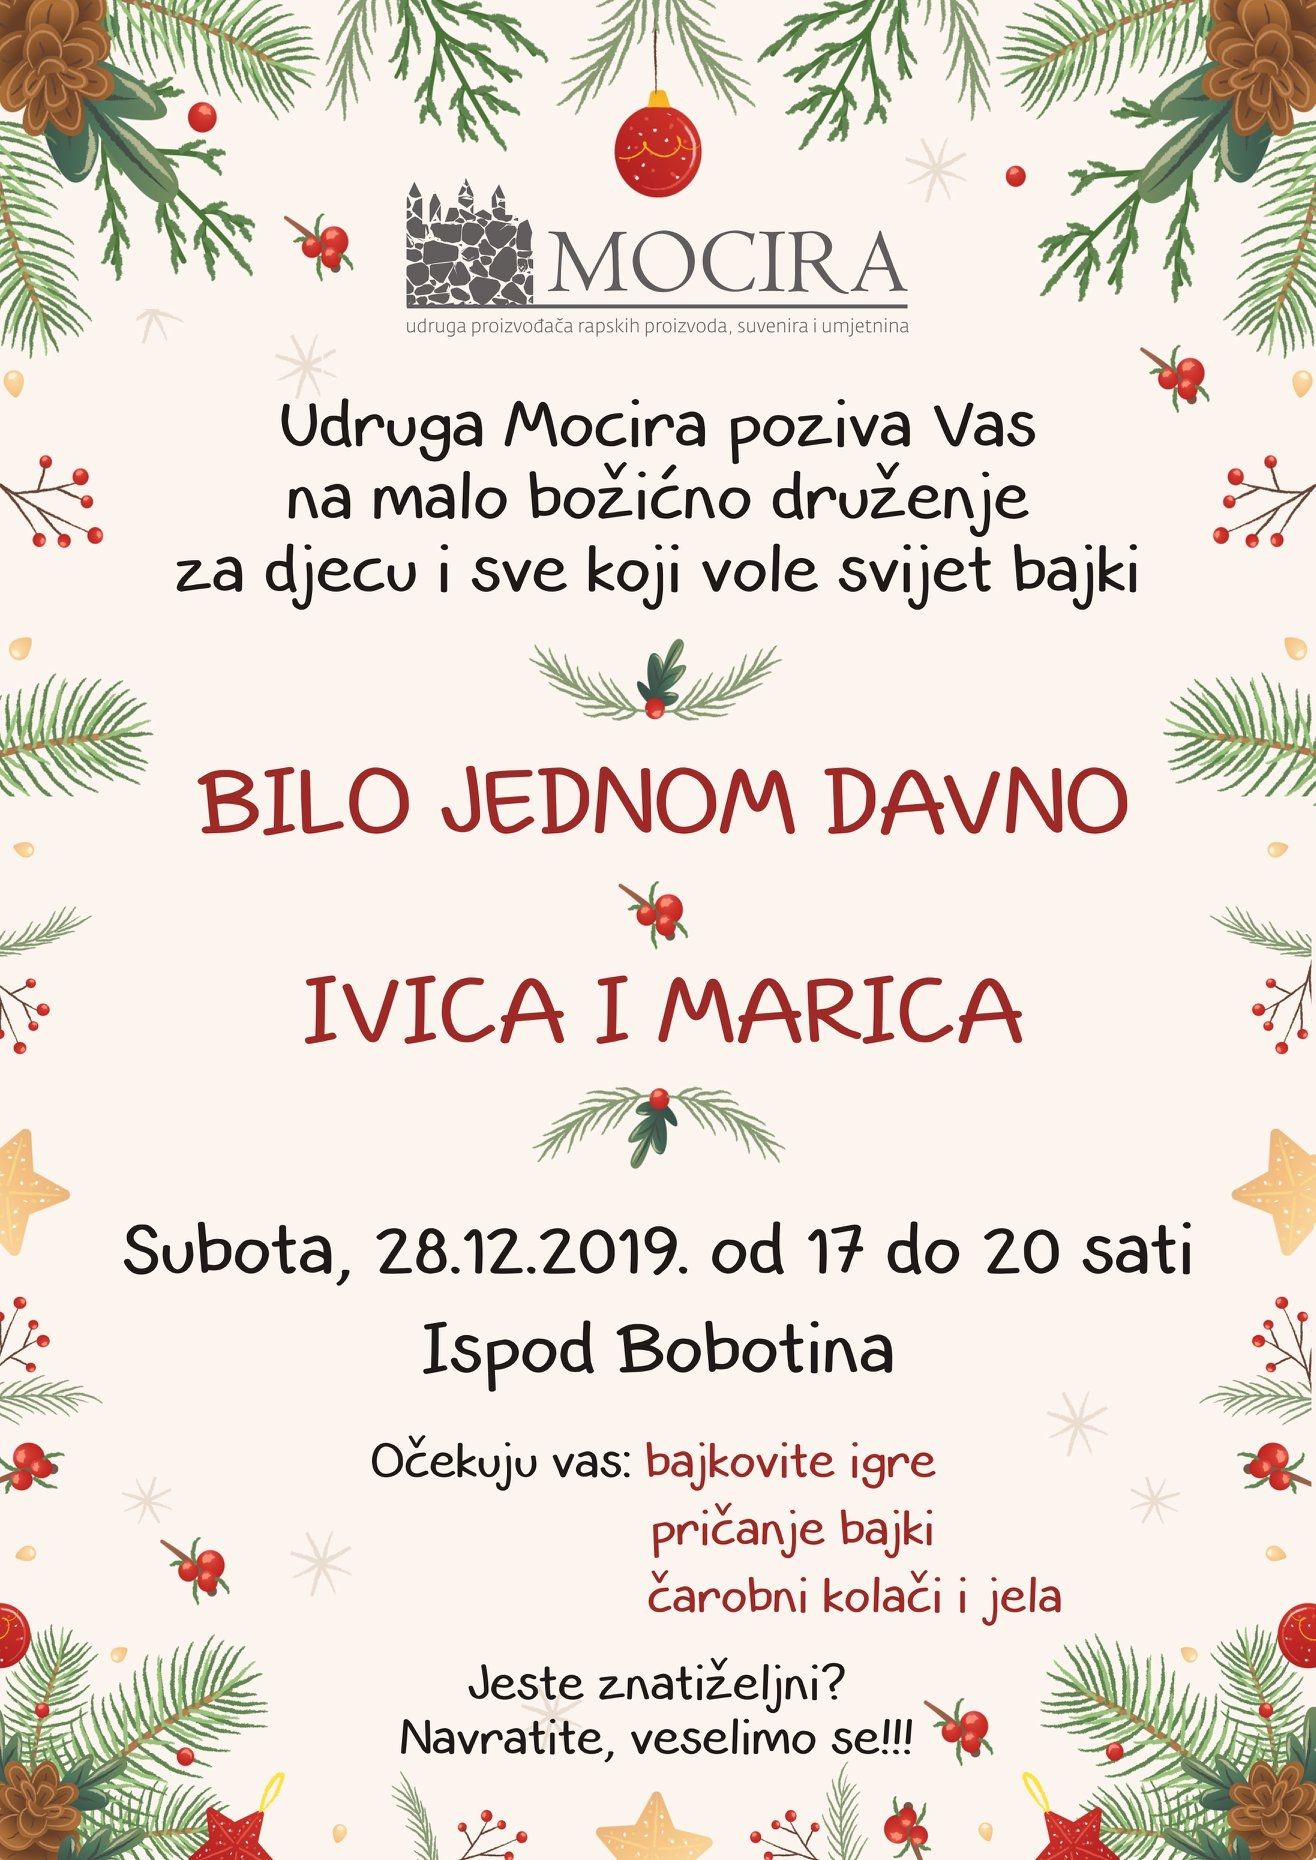 Bajkovito božićno druženje u režiji UDRUGE MOCIRA / (sub.) 28.12. od 17-20h